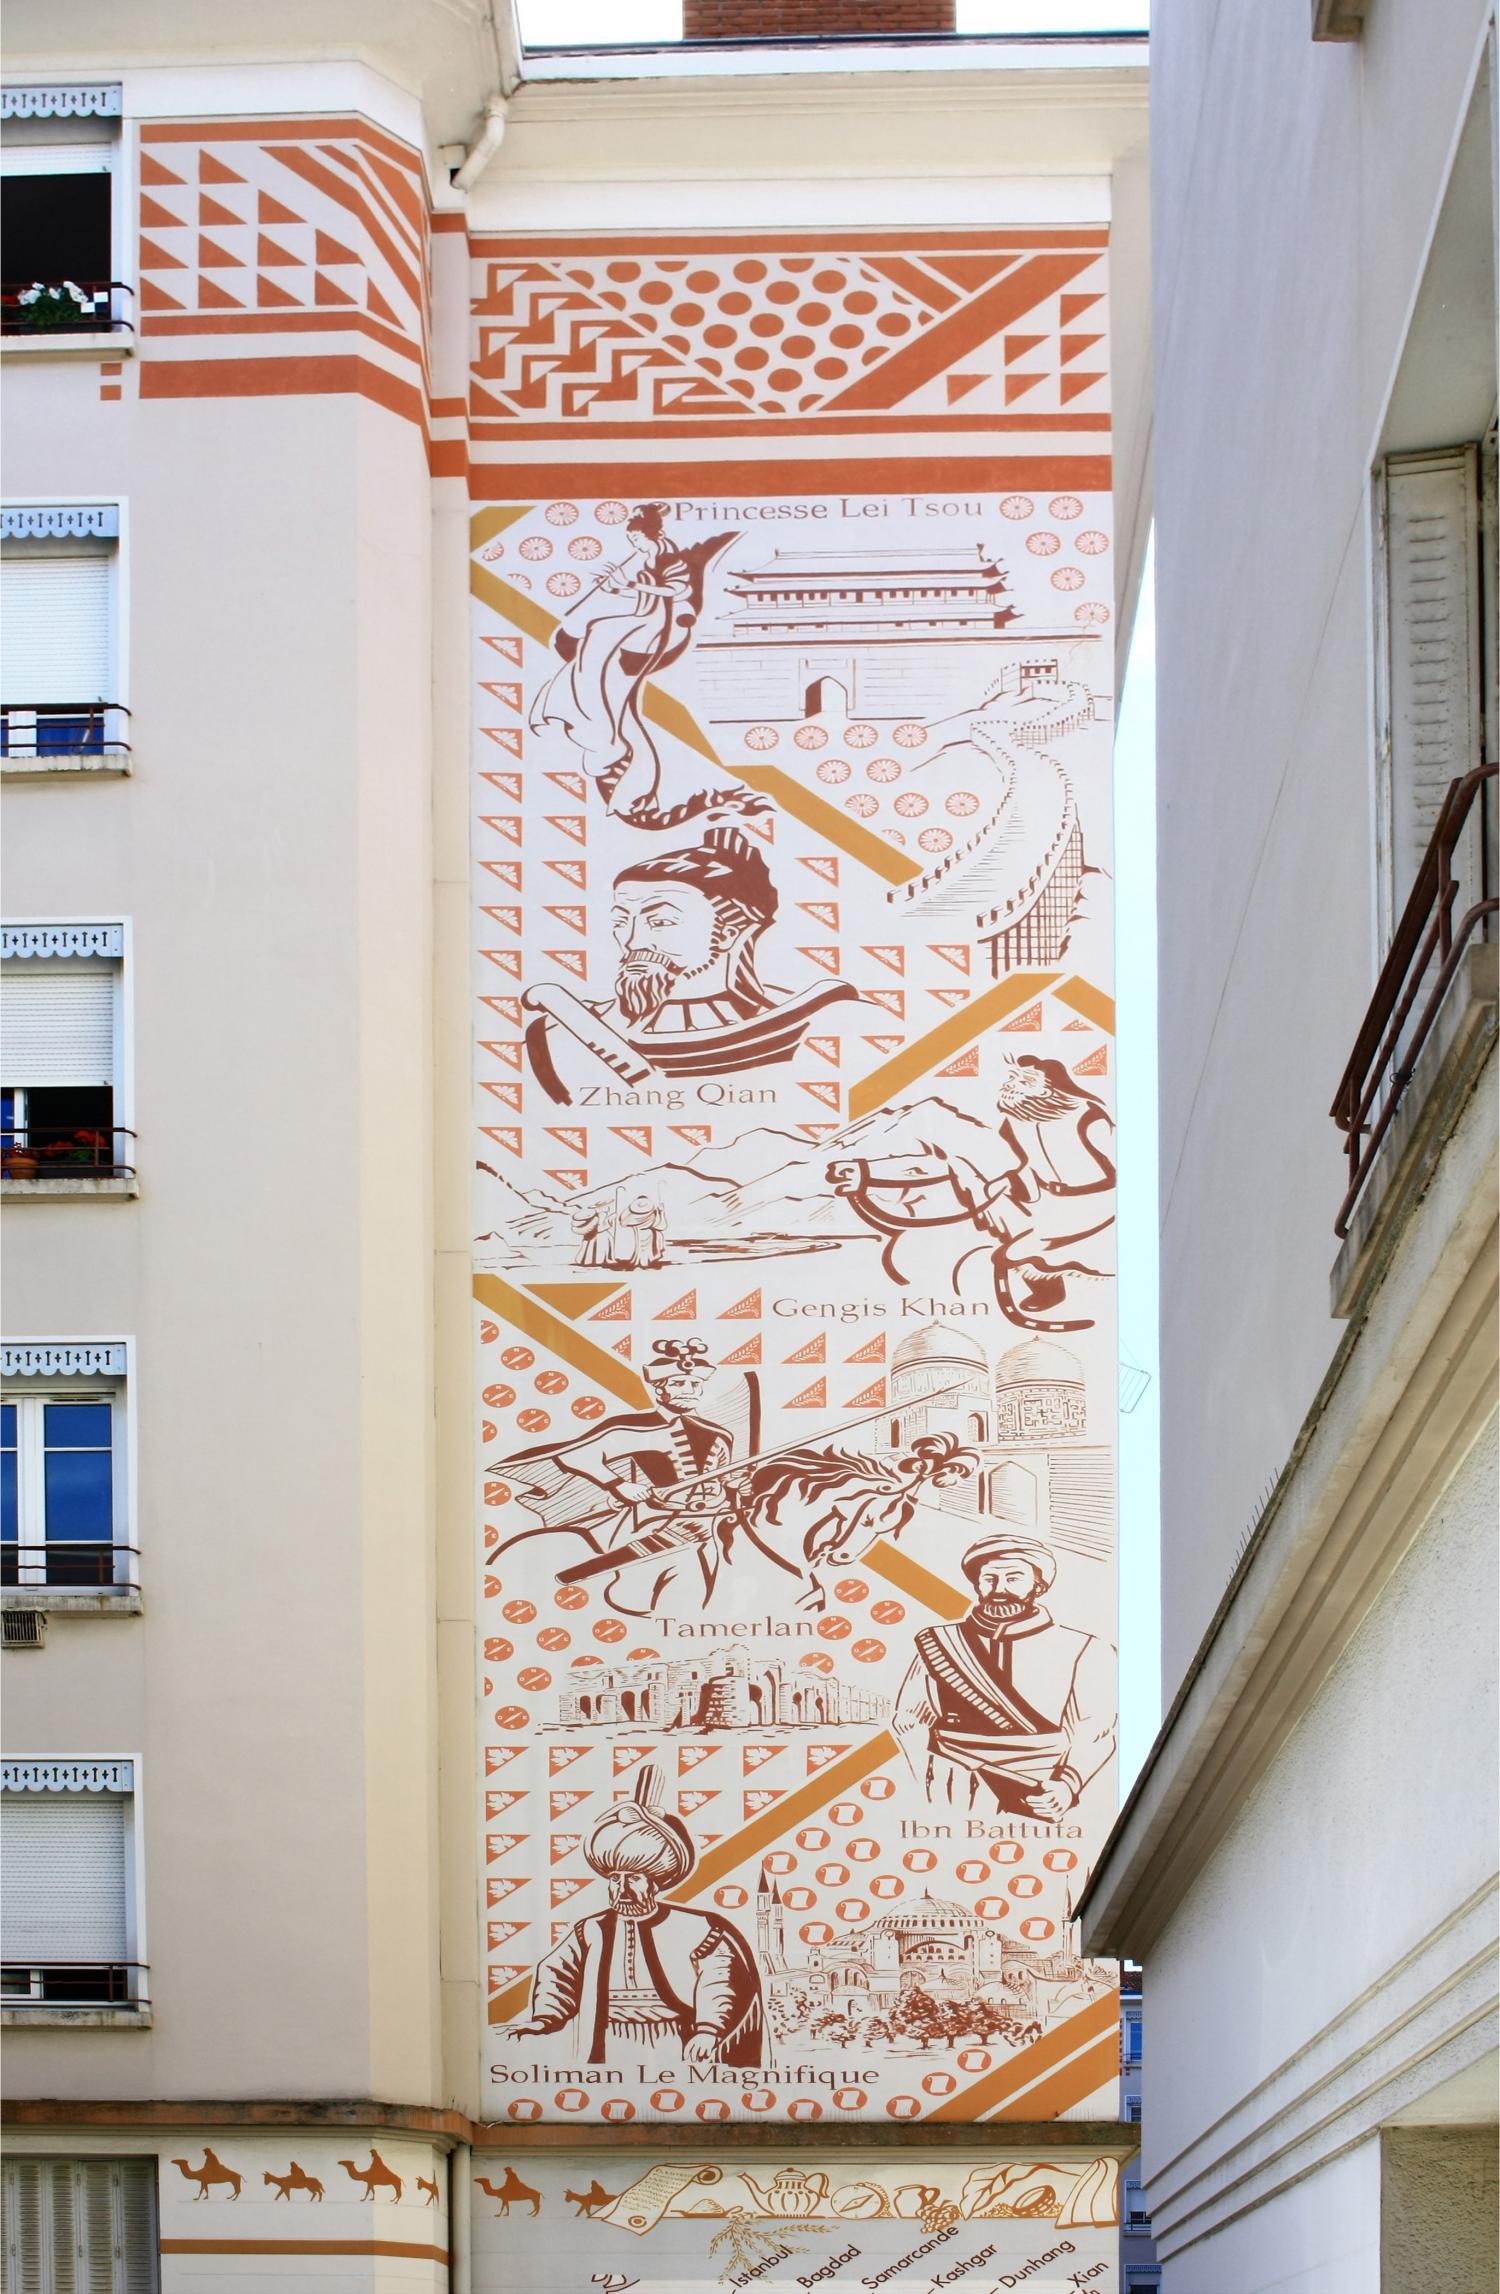 Fresque "Porte de la soie", 3 rue Carquillat, 1er arrondissement.